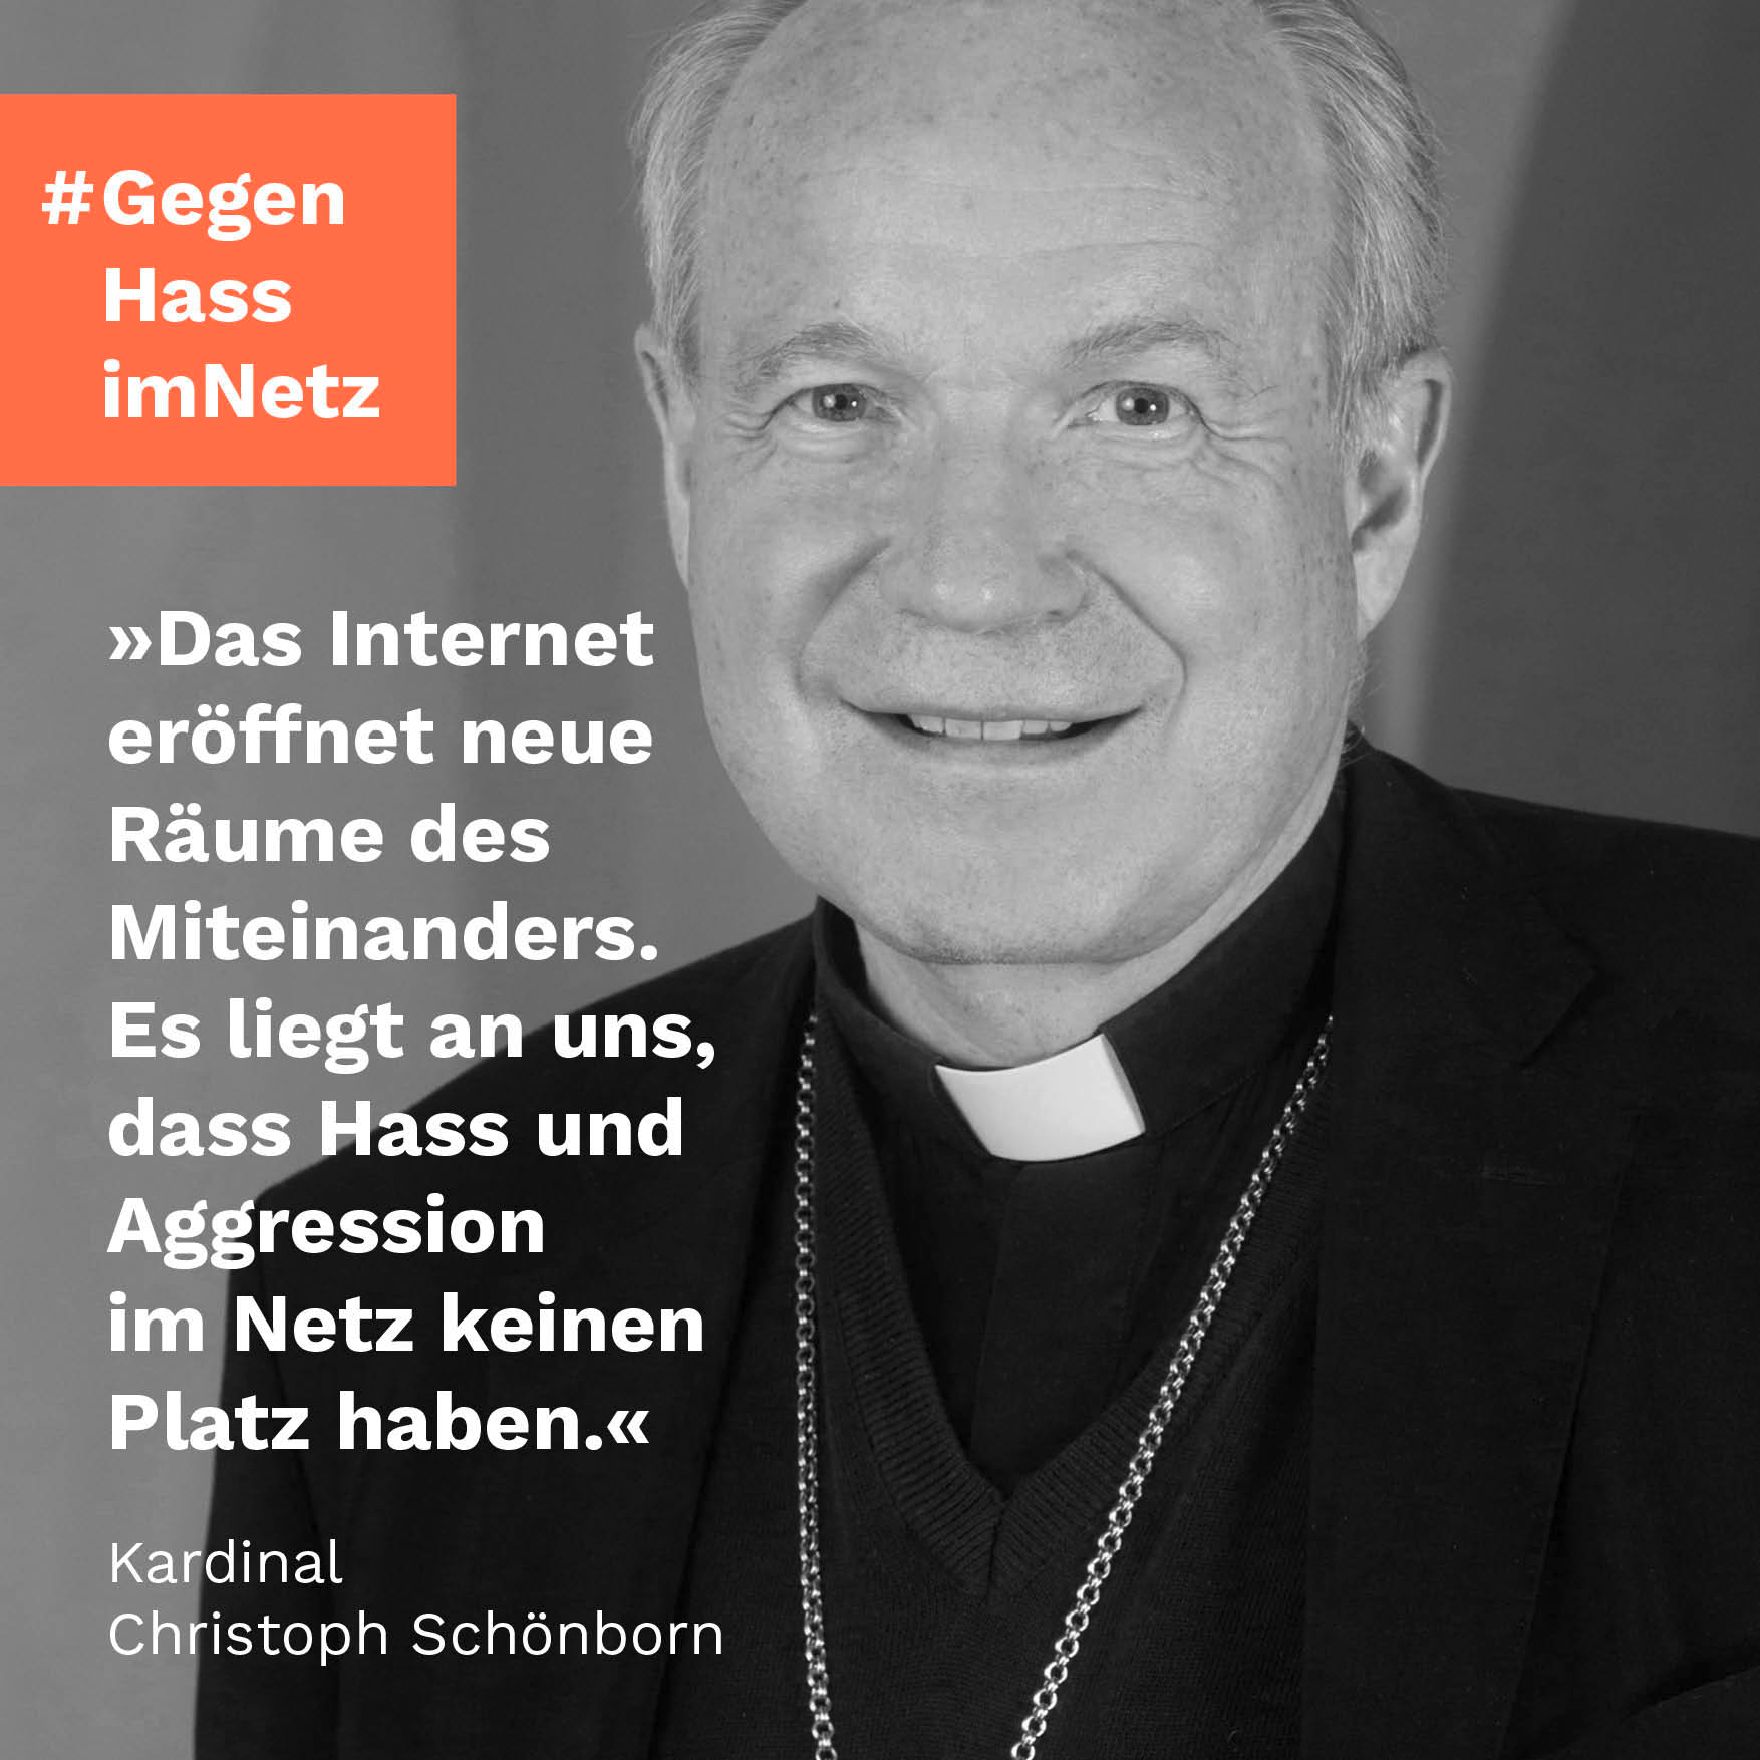 "Das Internet eröffnet neue Räume des Miteinanders. Es liegt an uns, das Hass und Aggression im Netz keinen Platz haben." Kardinal Christoph Schönborn